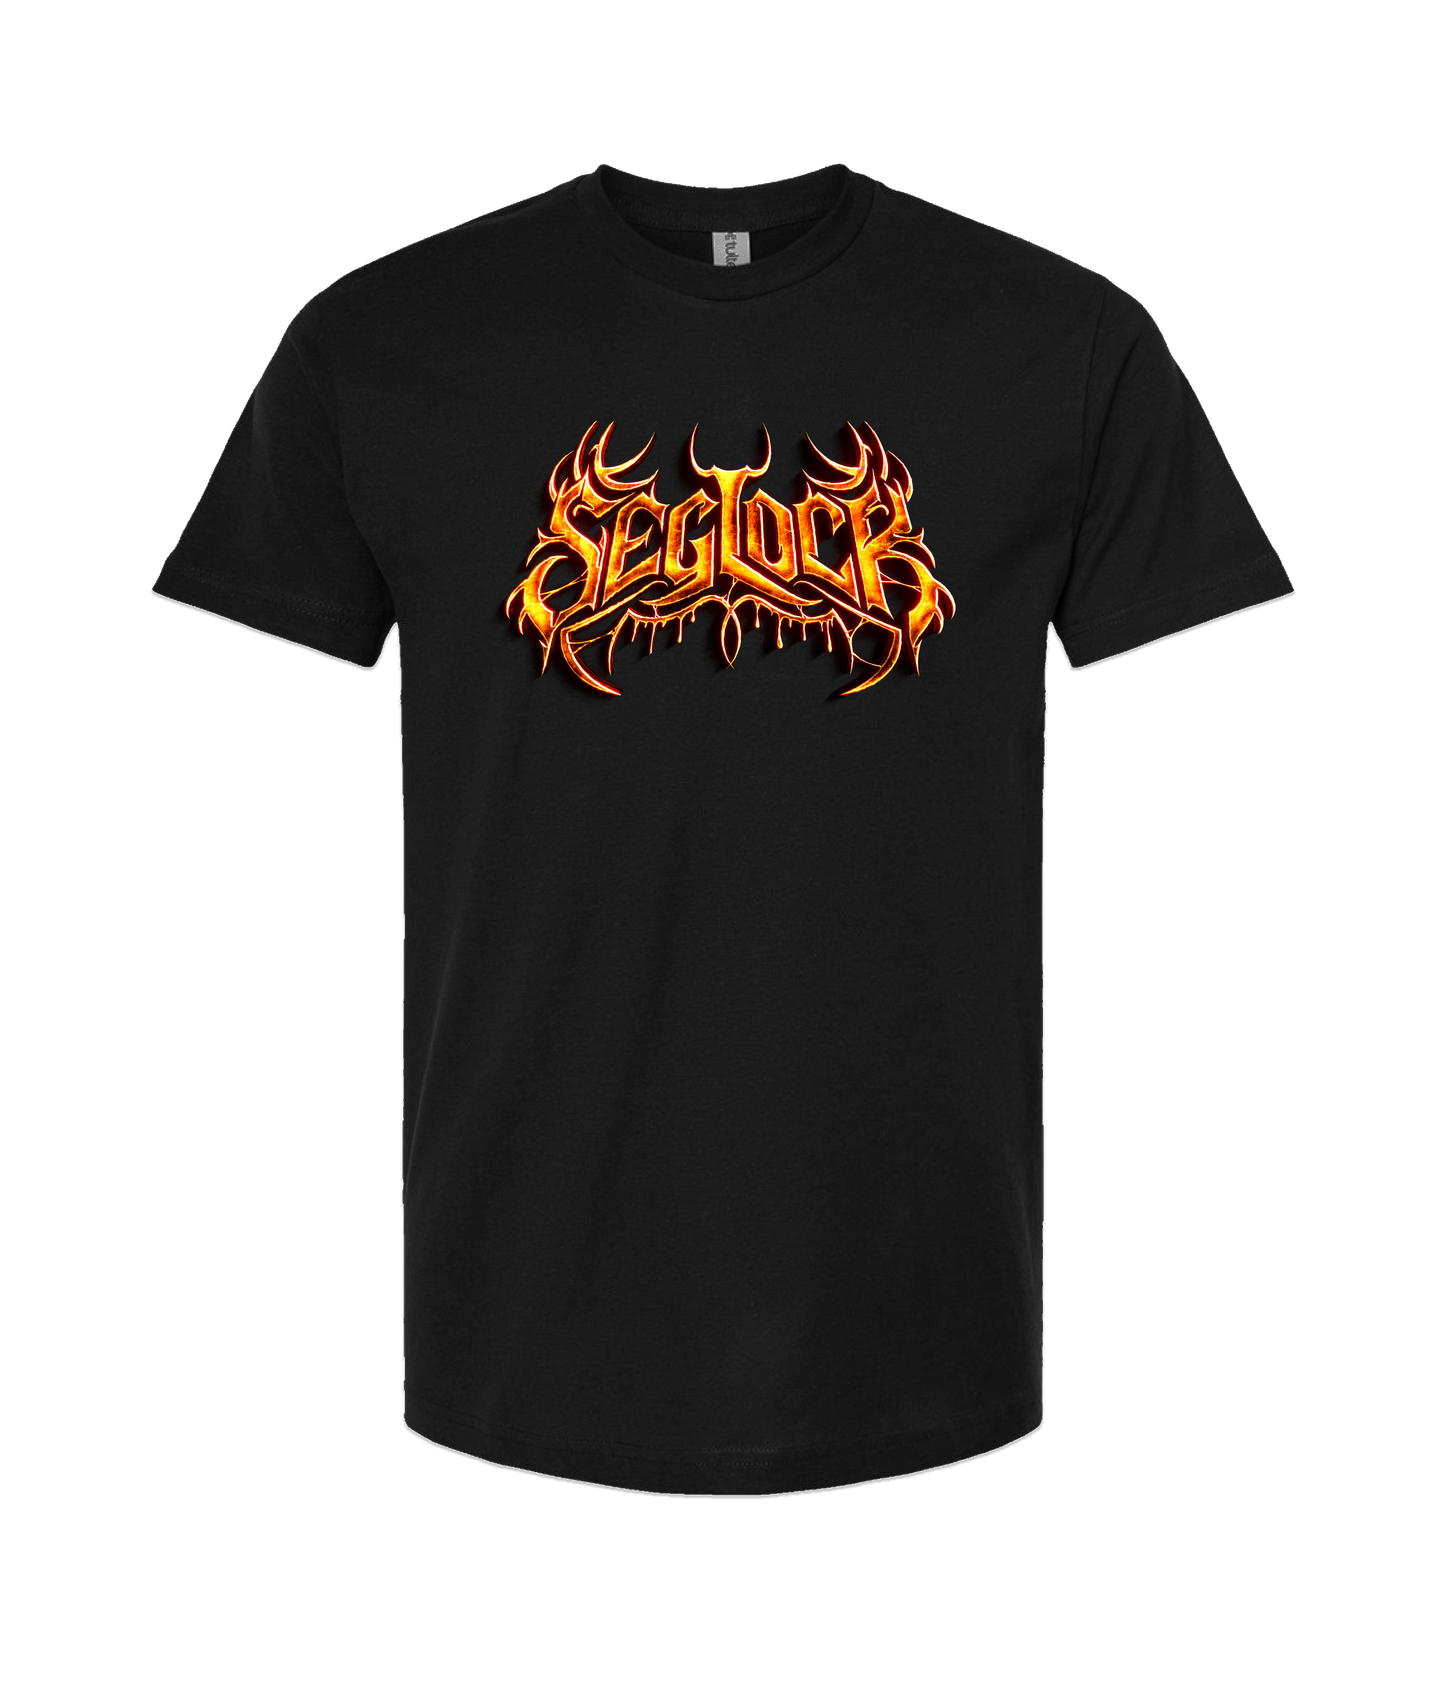 Seglock - Seg Glow - Black T-Shirt